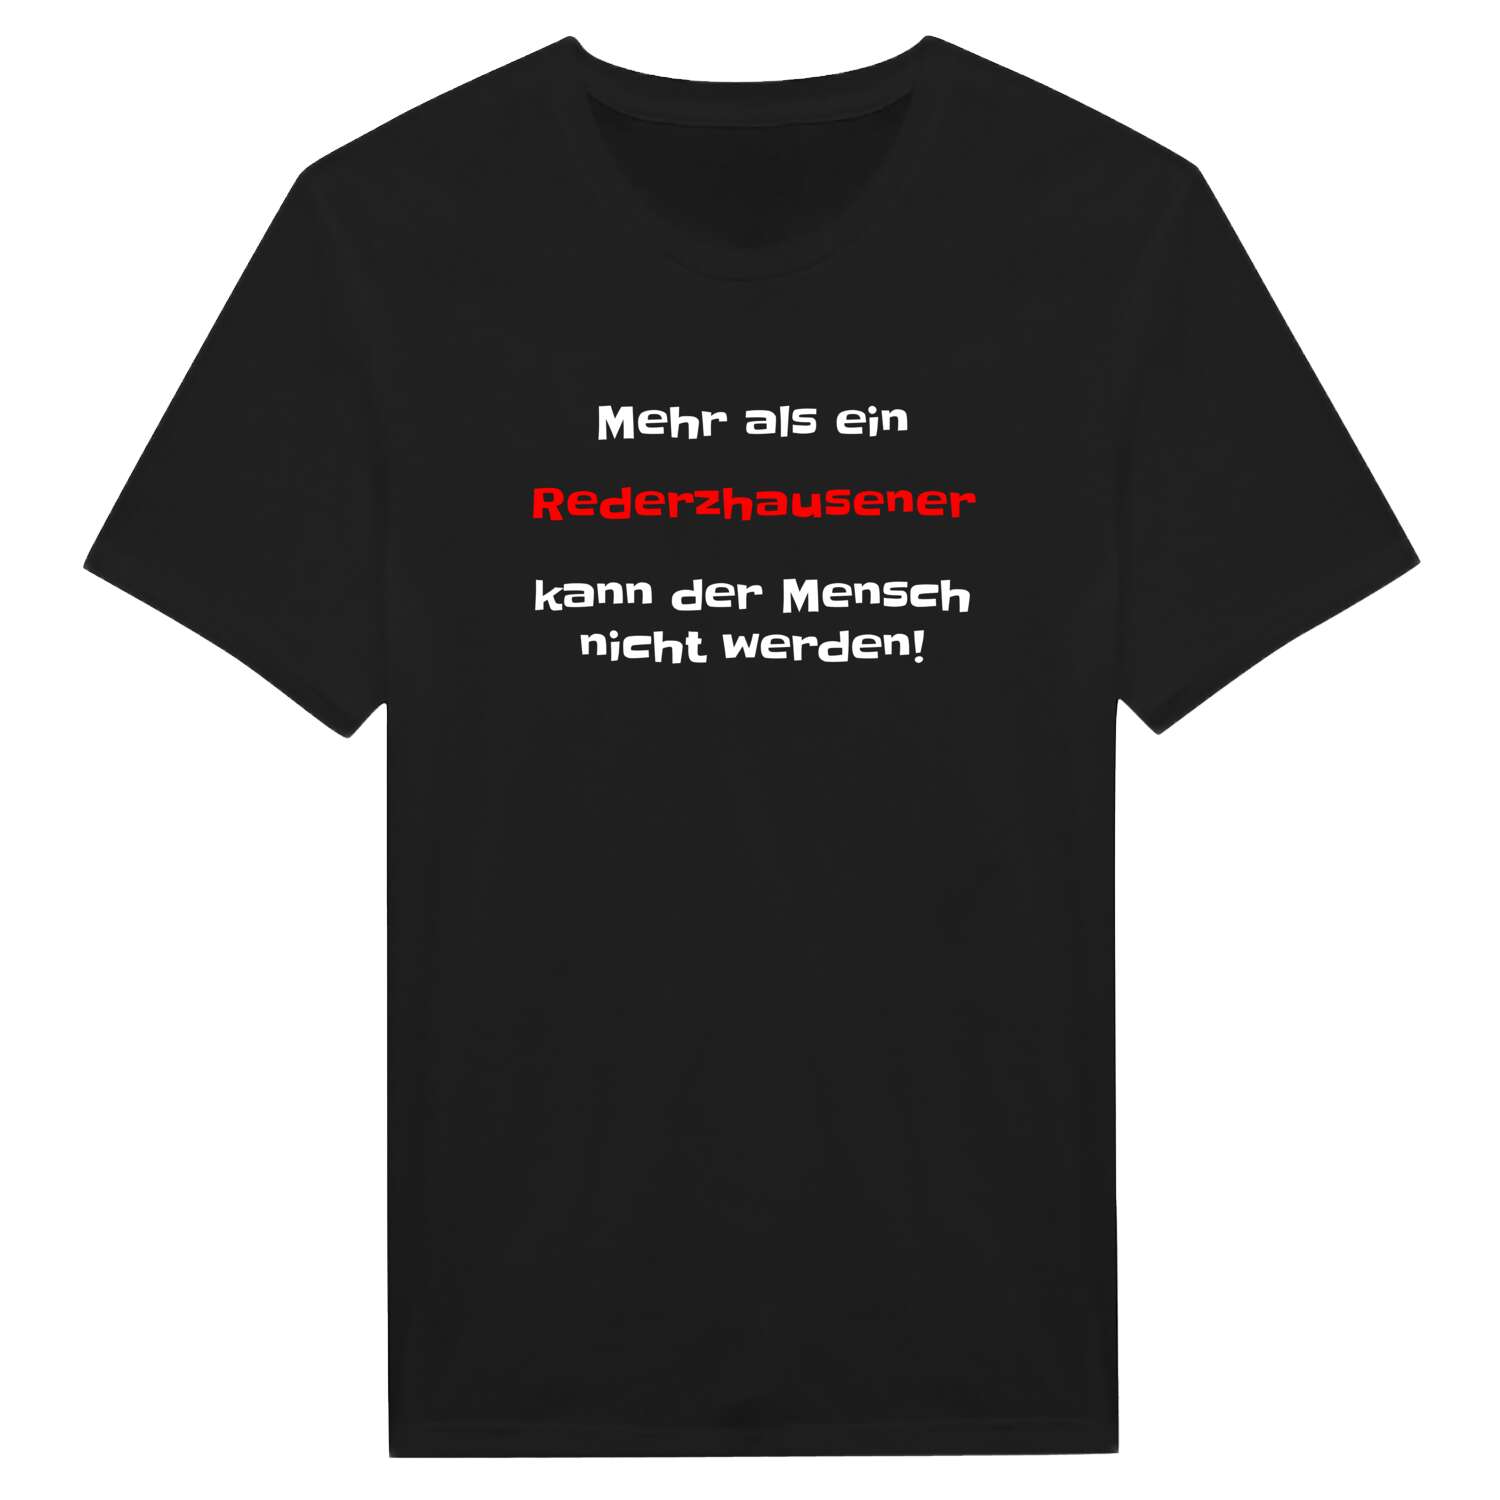 Rederzhausen T-Shirt »Mehr als ein«